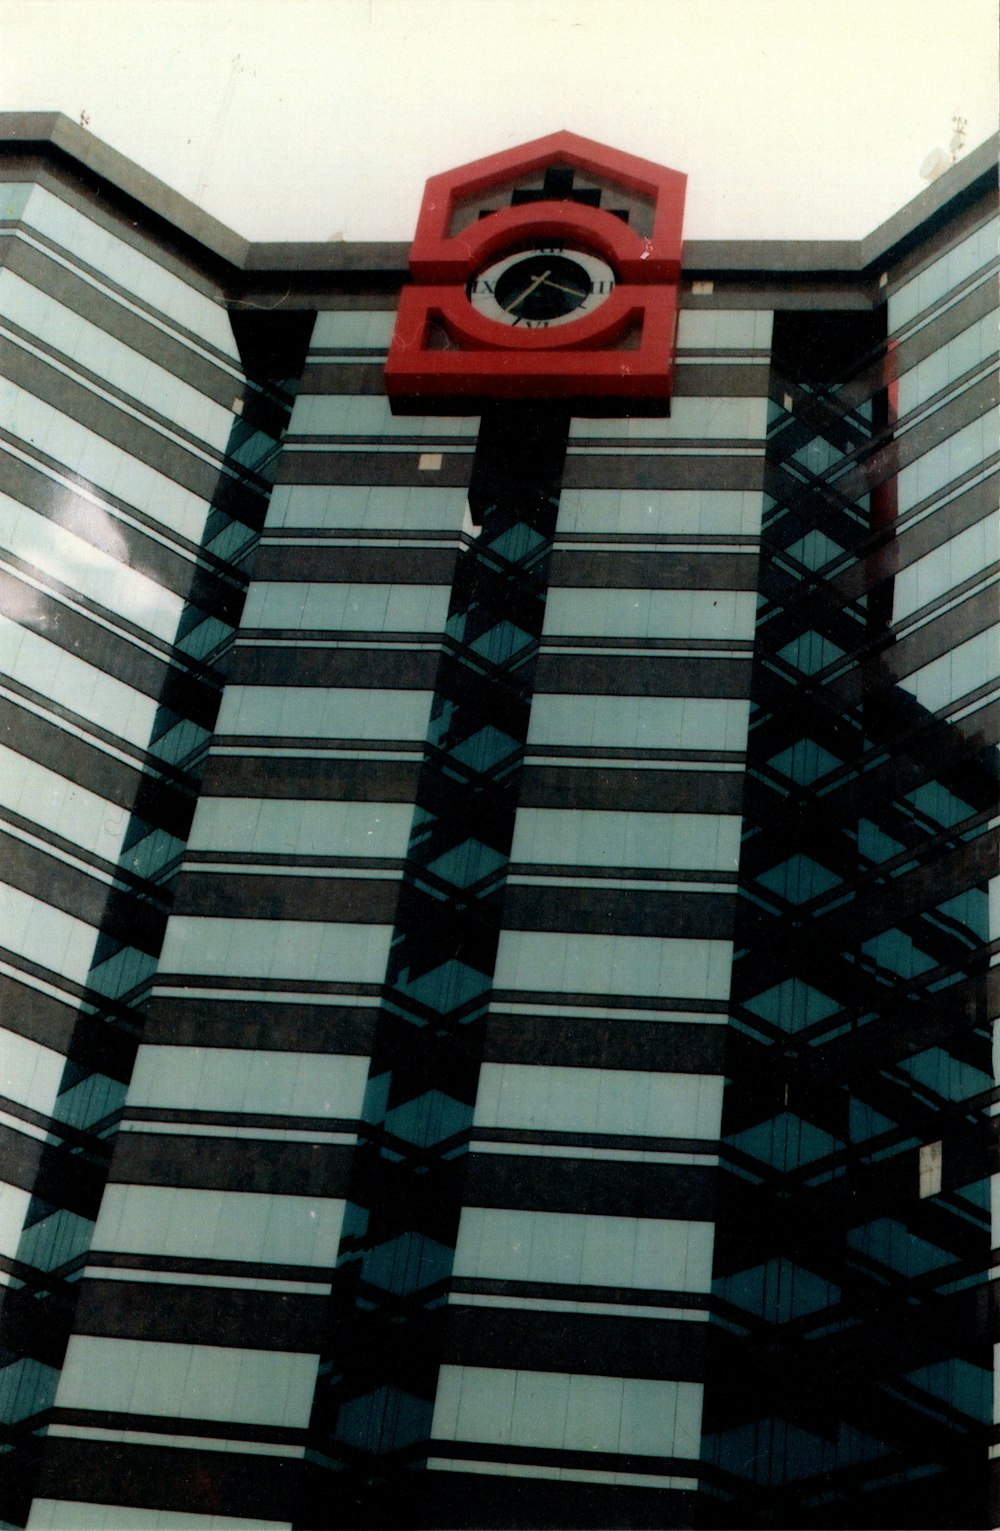 Eine rote Uhr an der Seite eines hohen Gebäudes